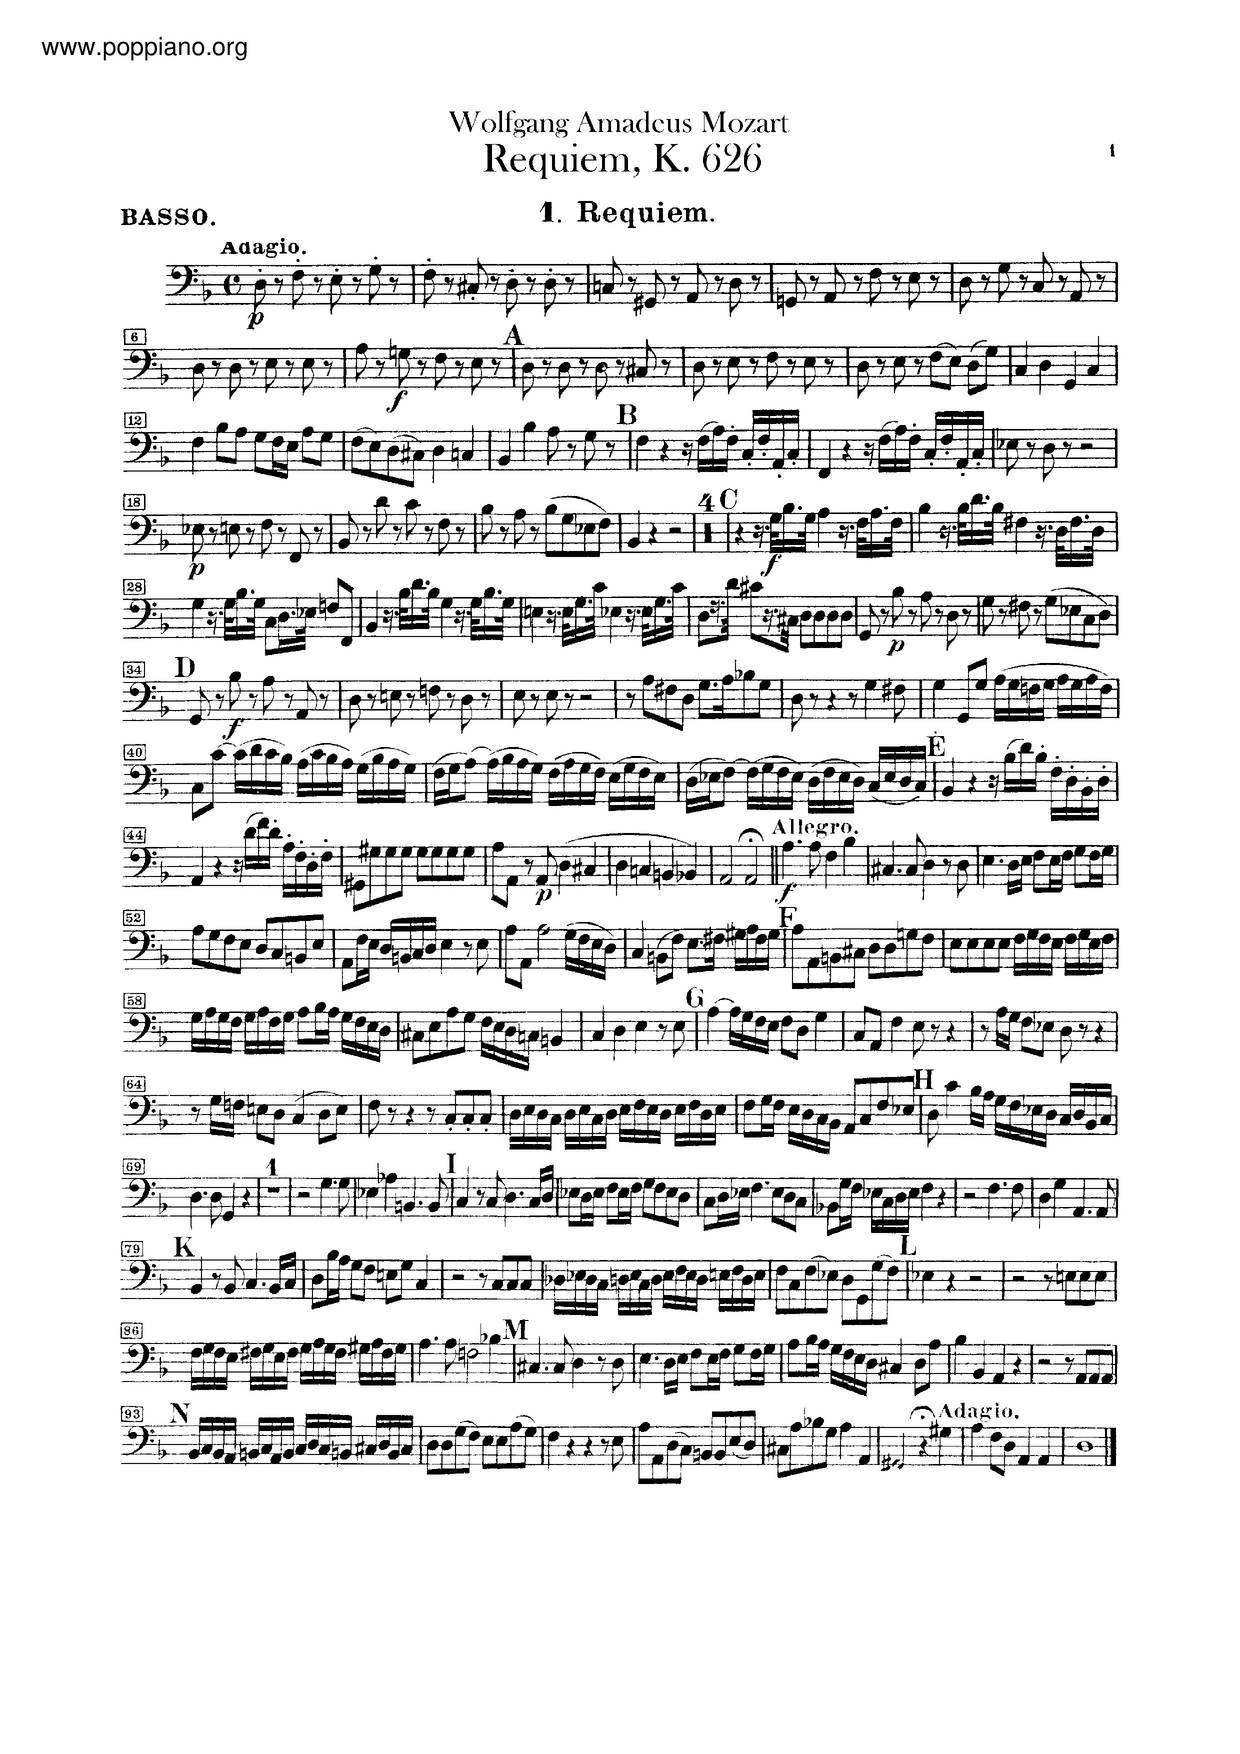 Requiem, K. 626: Lacrimosa琴譜